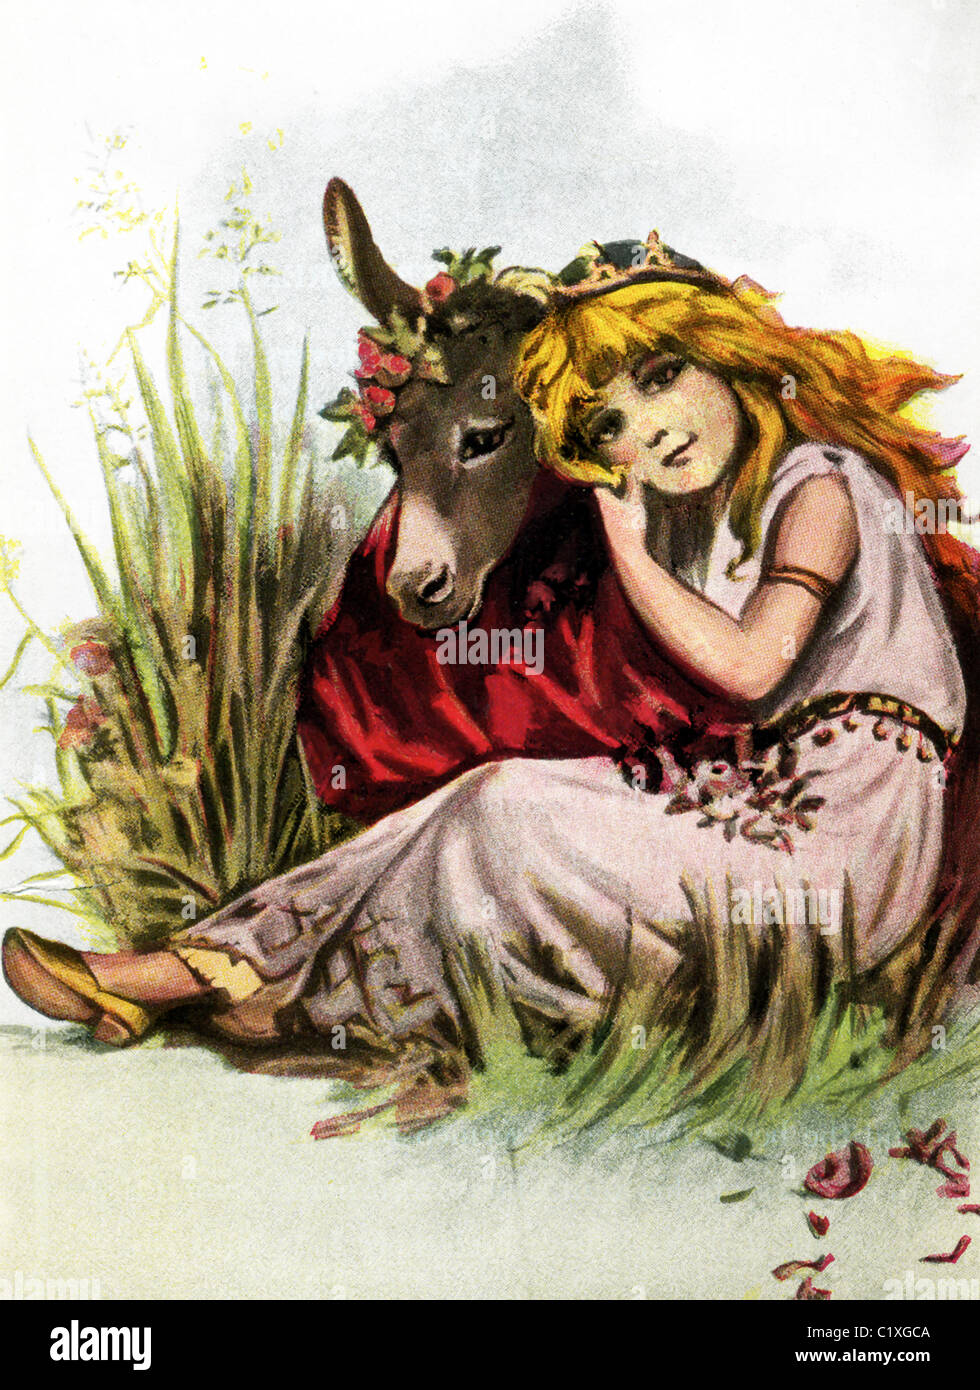 L'illustrateur américain Frances Brundage montre Titania avec un clown, sur la tête duquel Puck avait placé une tête d'âne. Banque D'Images